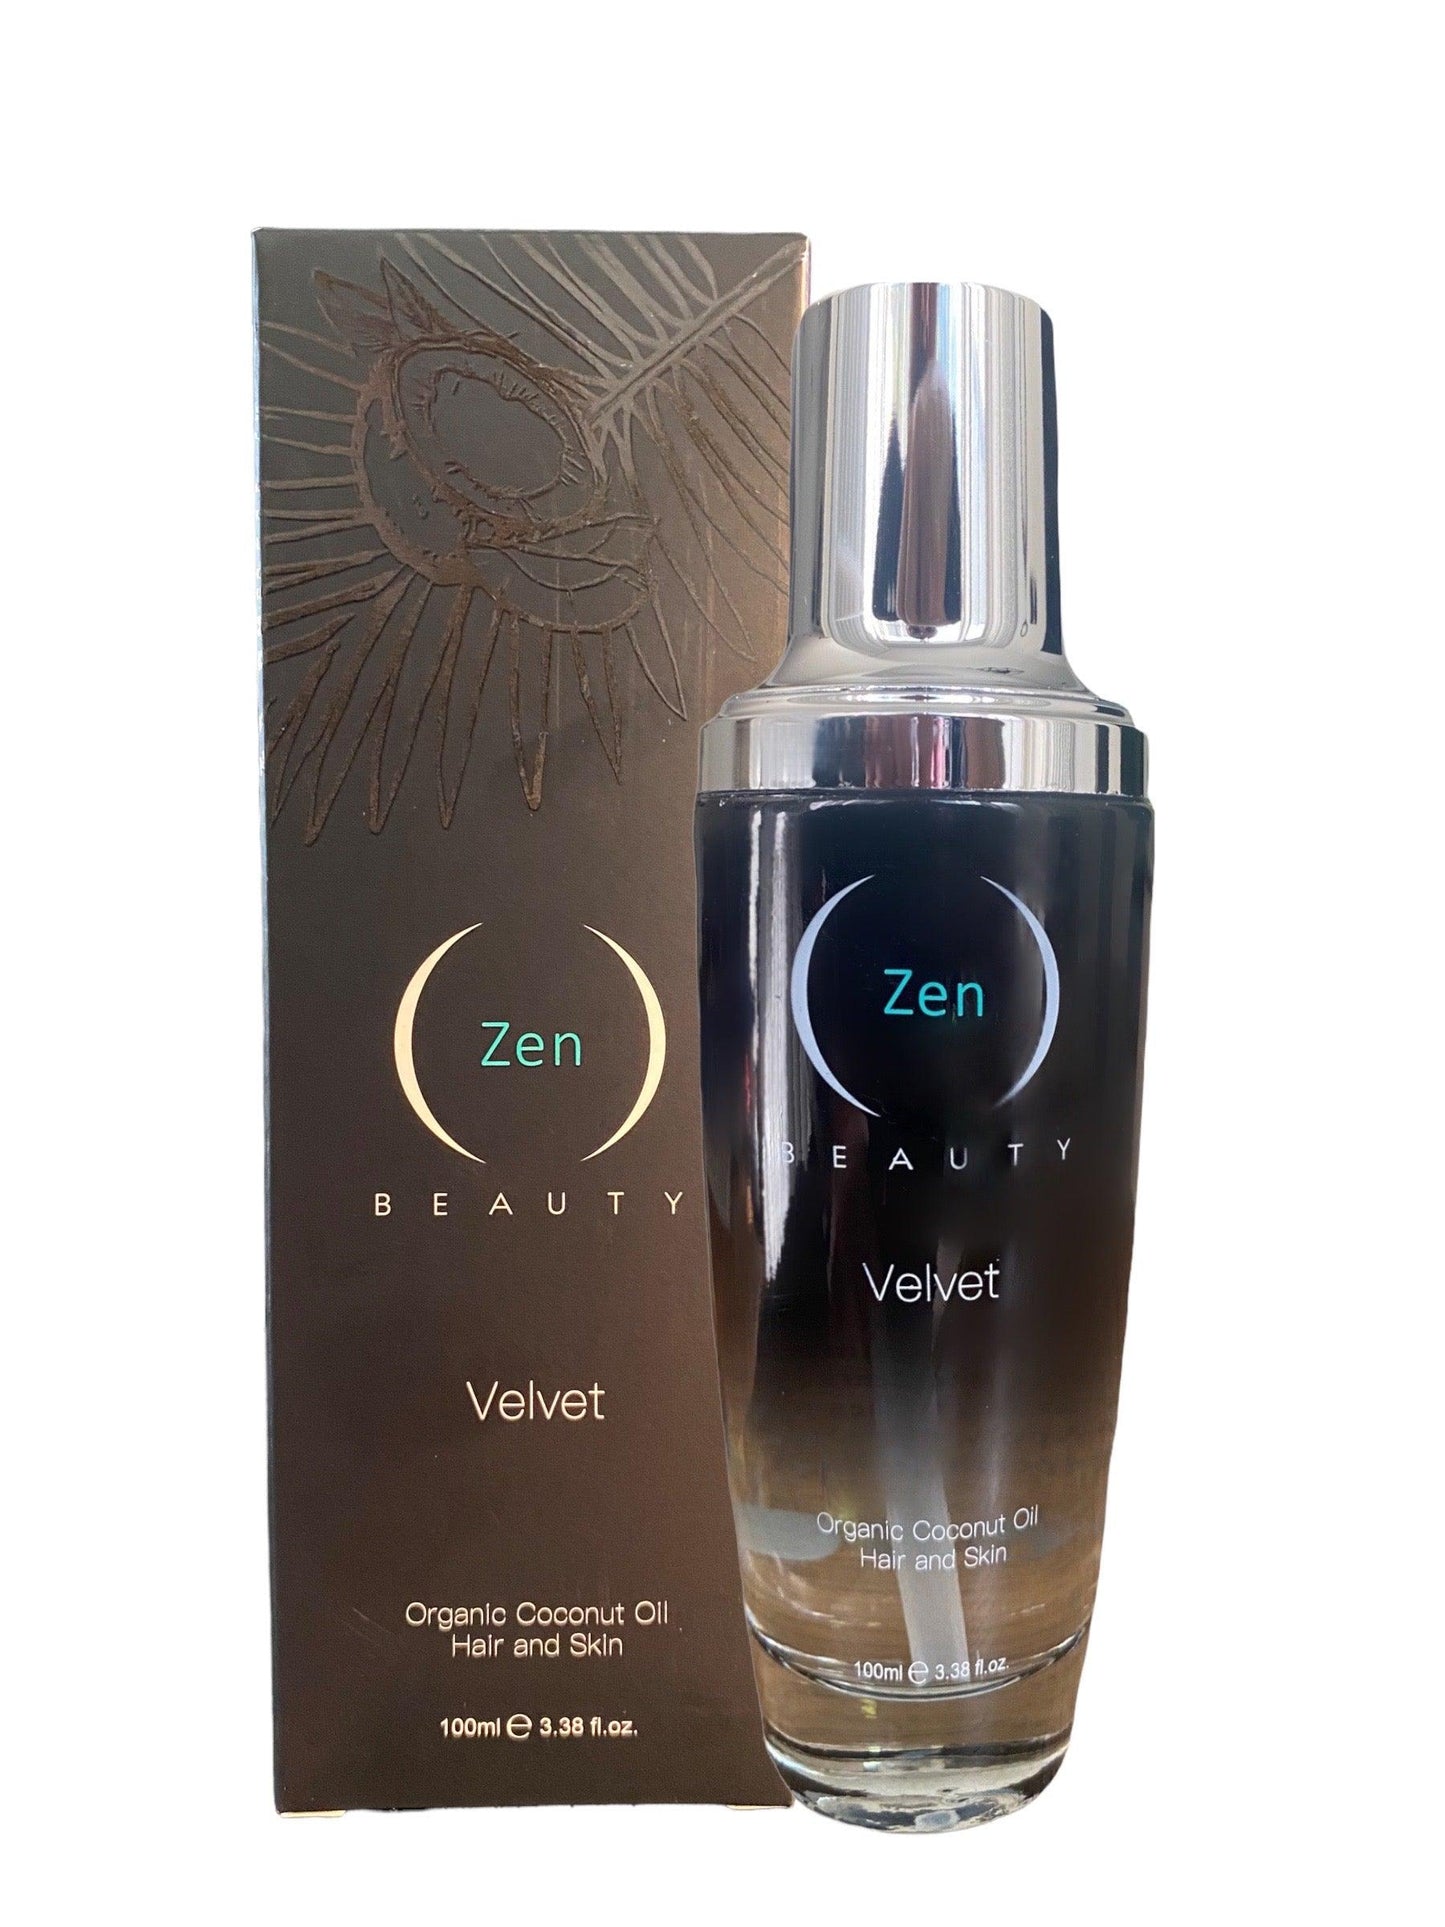 Velvet Organic Coconut Oil for hair and body - Zen Beauty